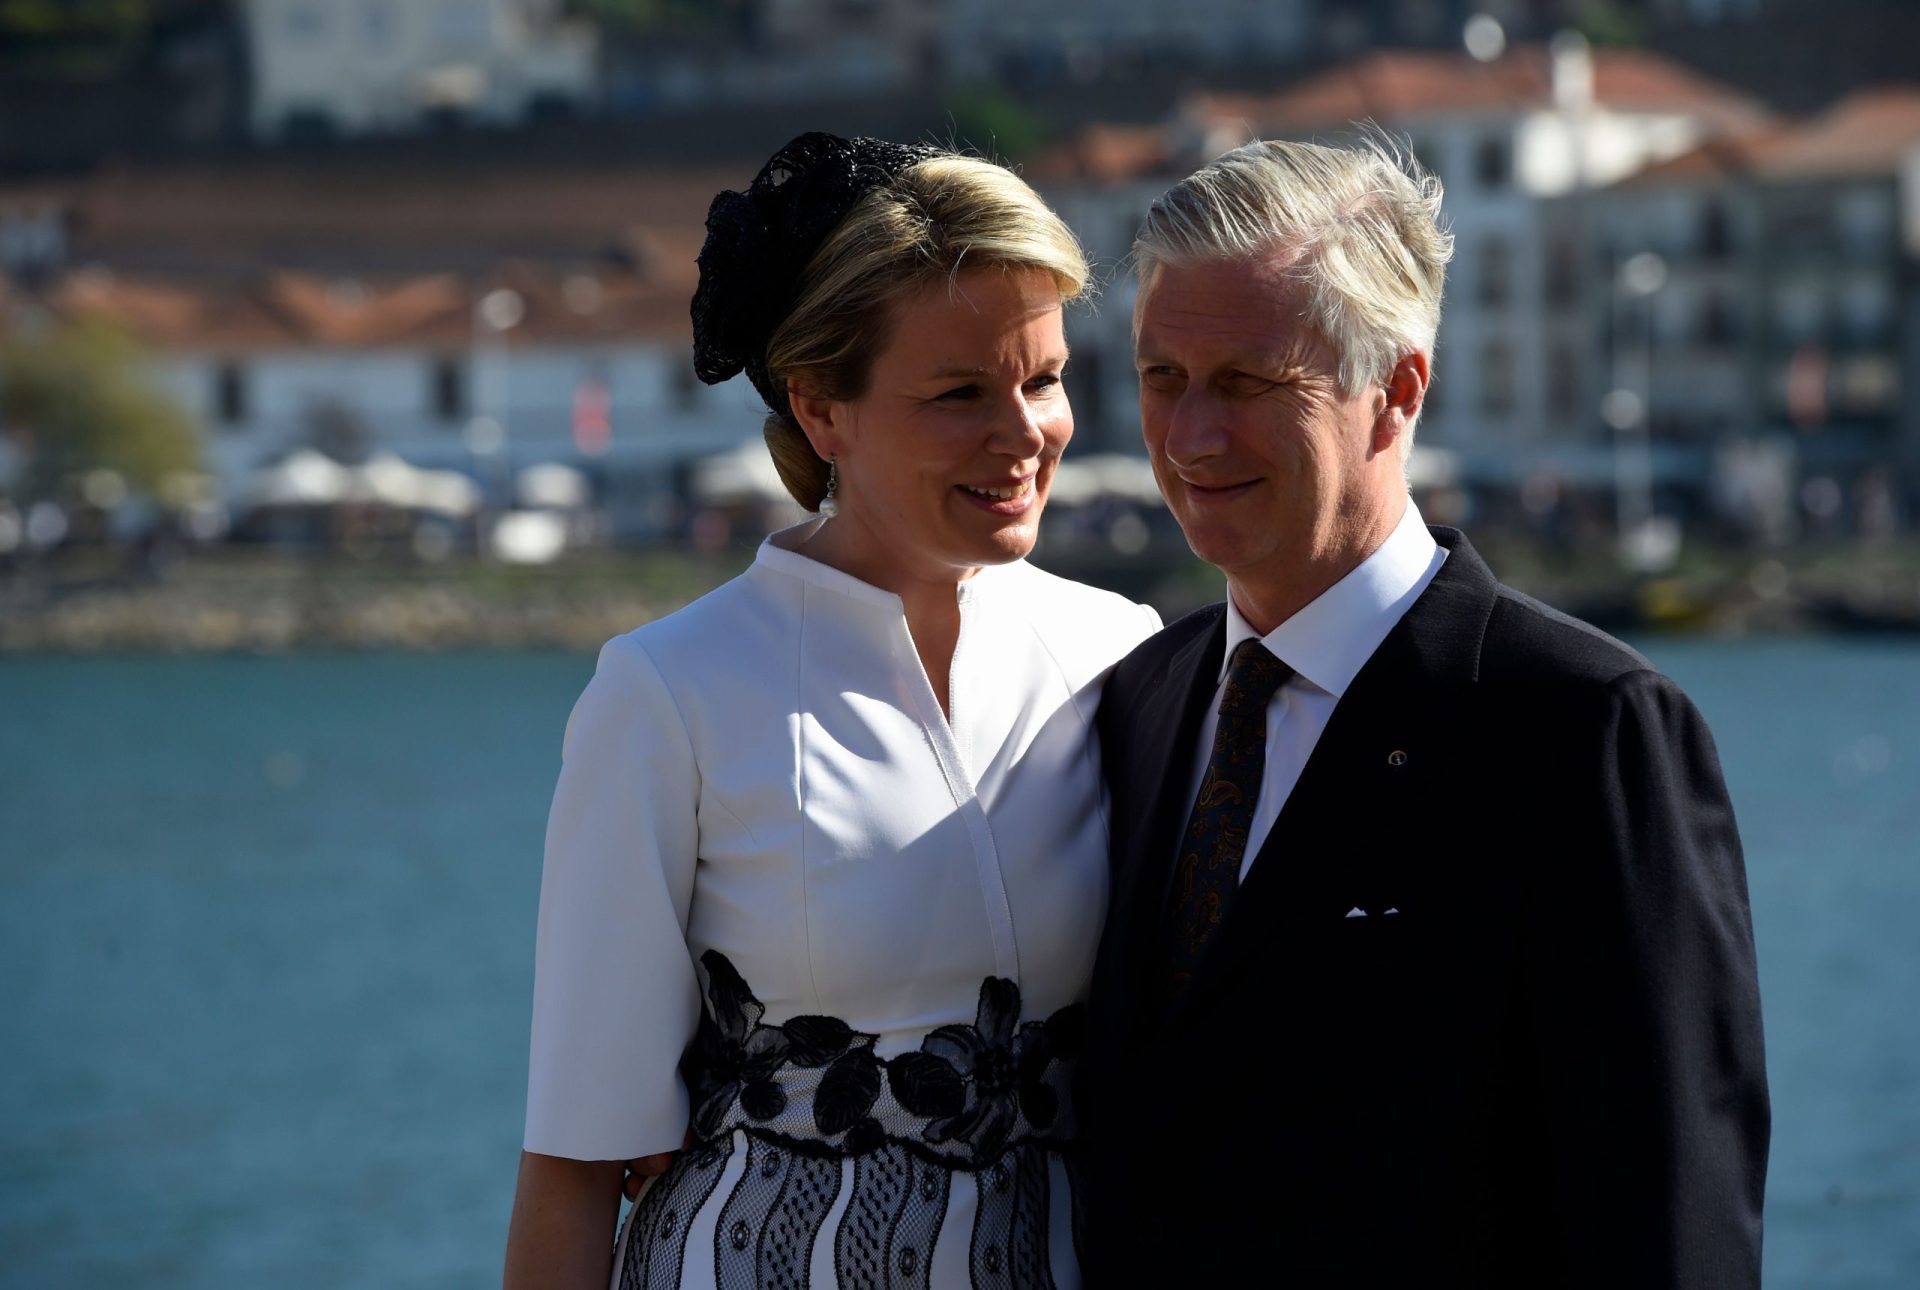 Rei dos Belgas lamenta apenas uma coisa na visita oficial a Portugal: não durar três semanas